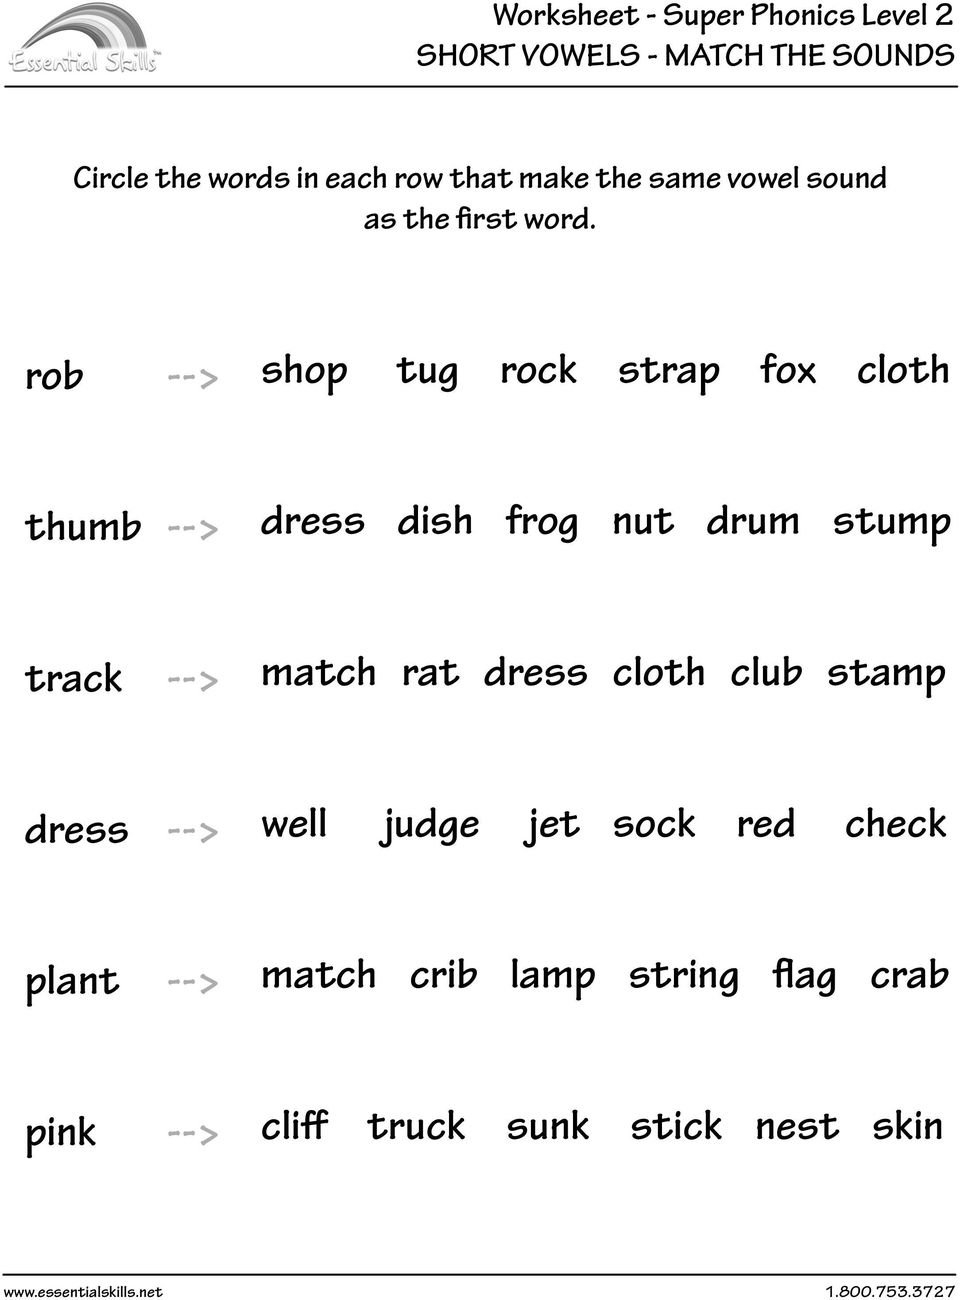 Worksheet Set  Super Phonics Level 2  Pdf In Words With The Same Vowel Sound Worksheets